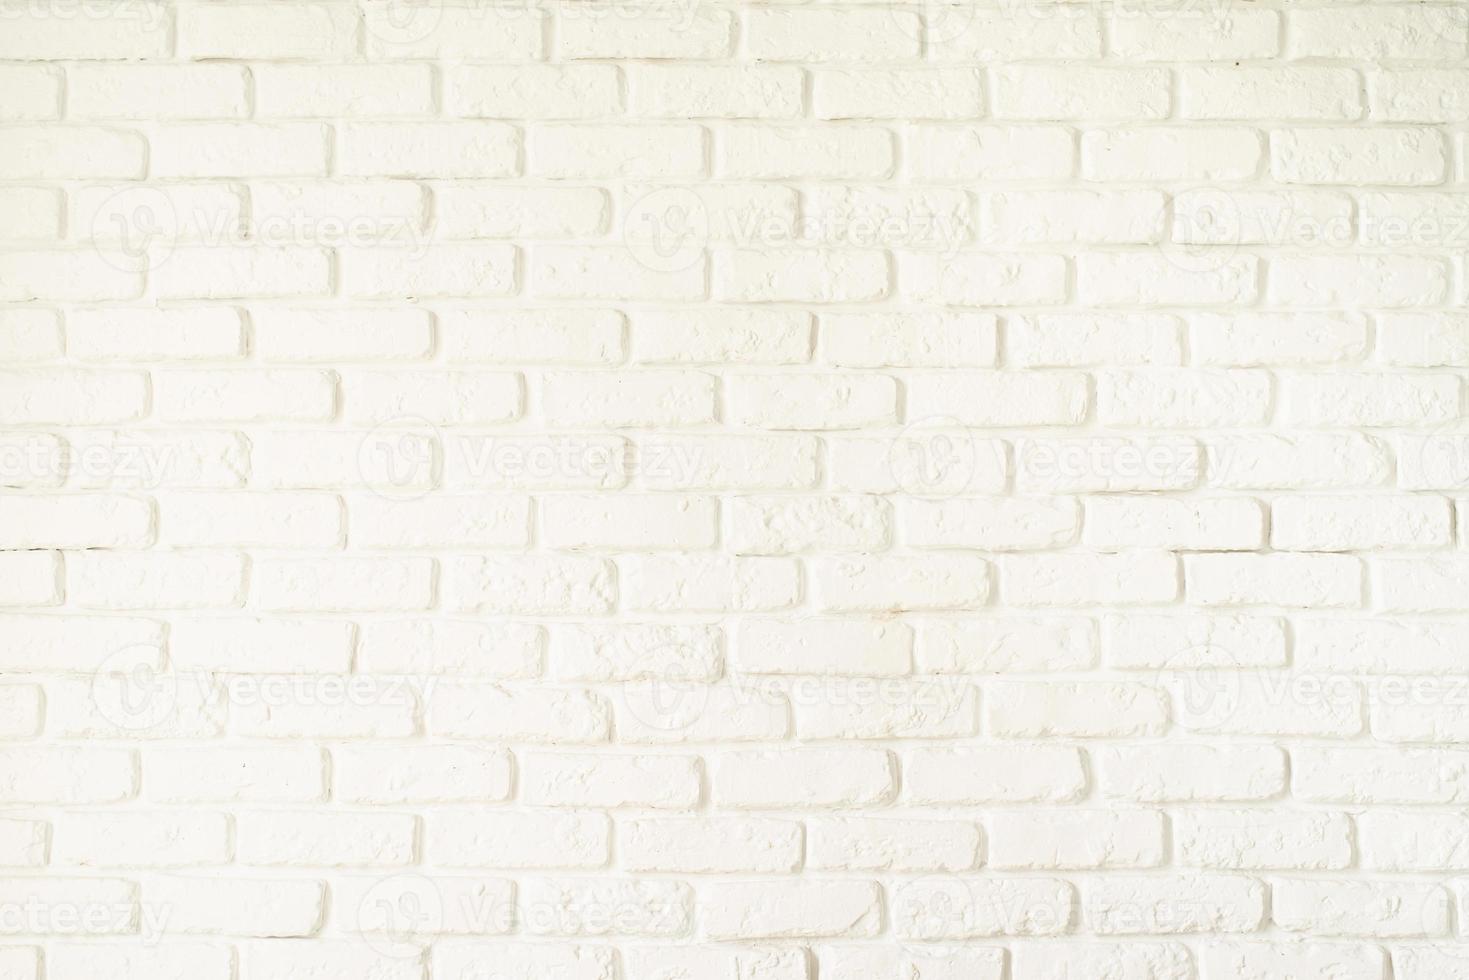 une texture de mur de briques blanches photo